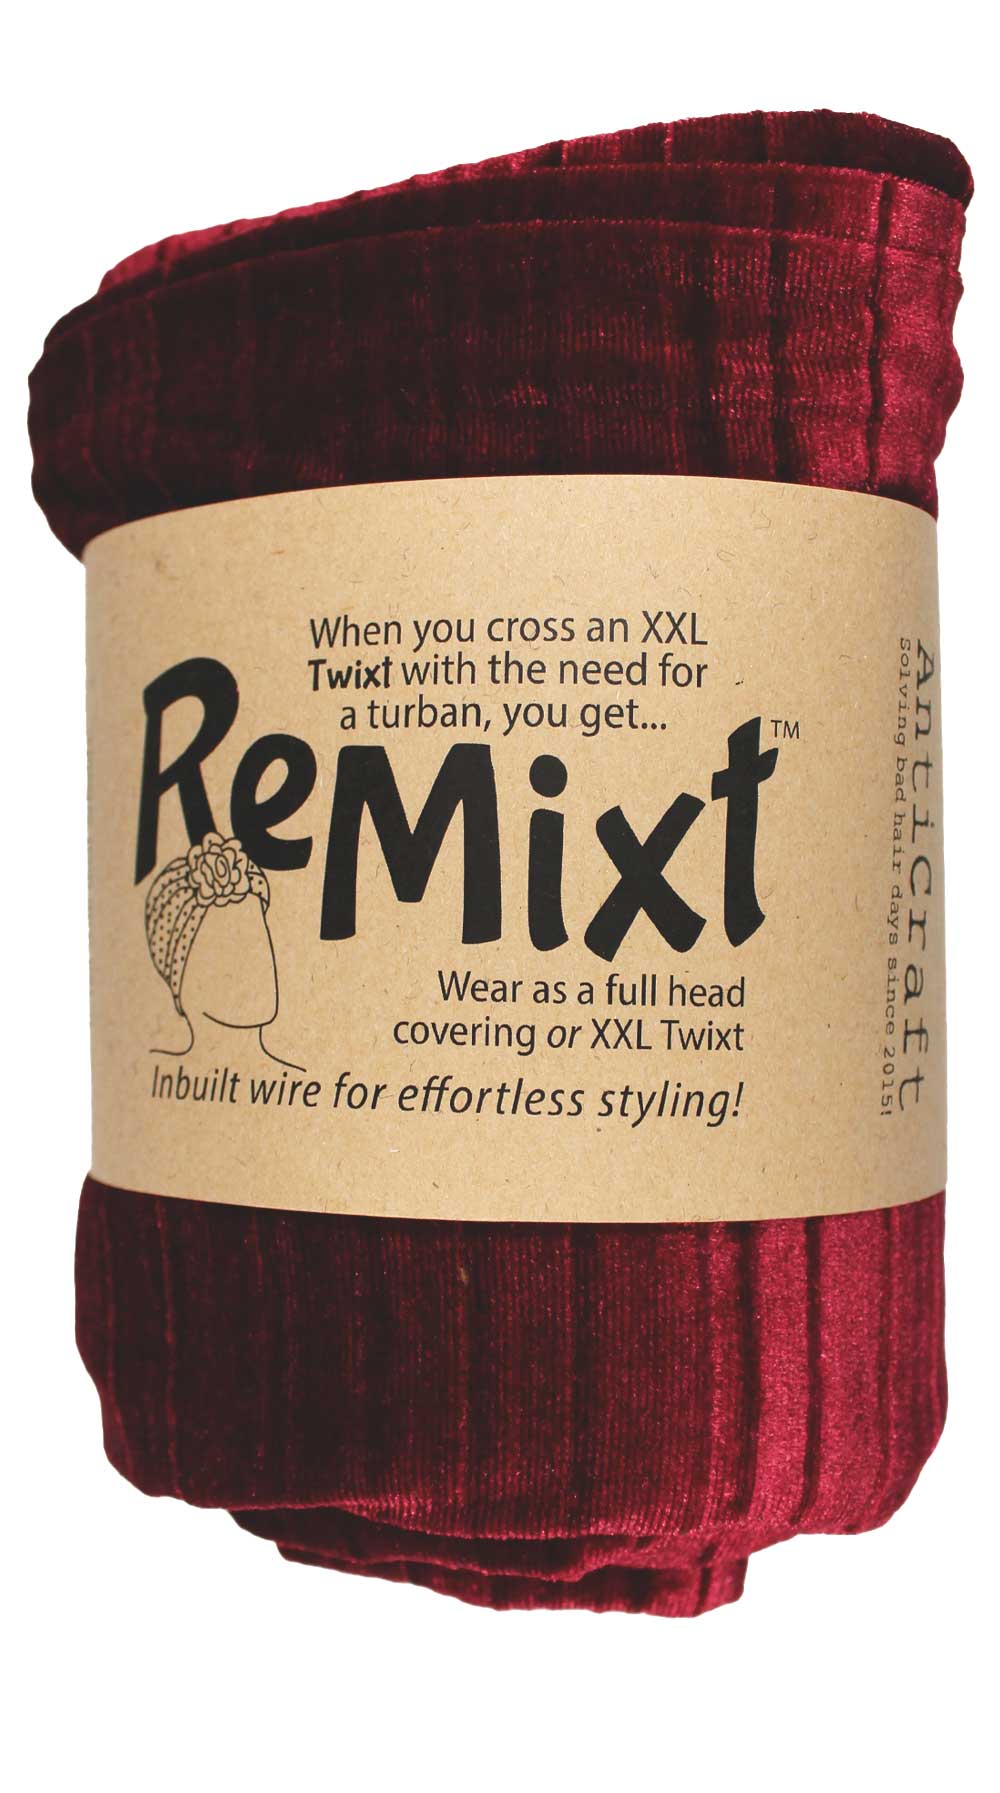 Wine Red Velvet - LUXE RANGE ReMixt / Wired Turban / Full Head Covering